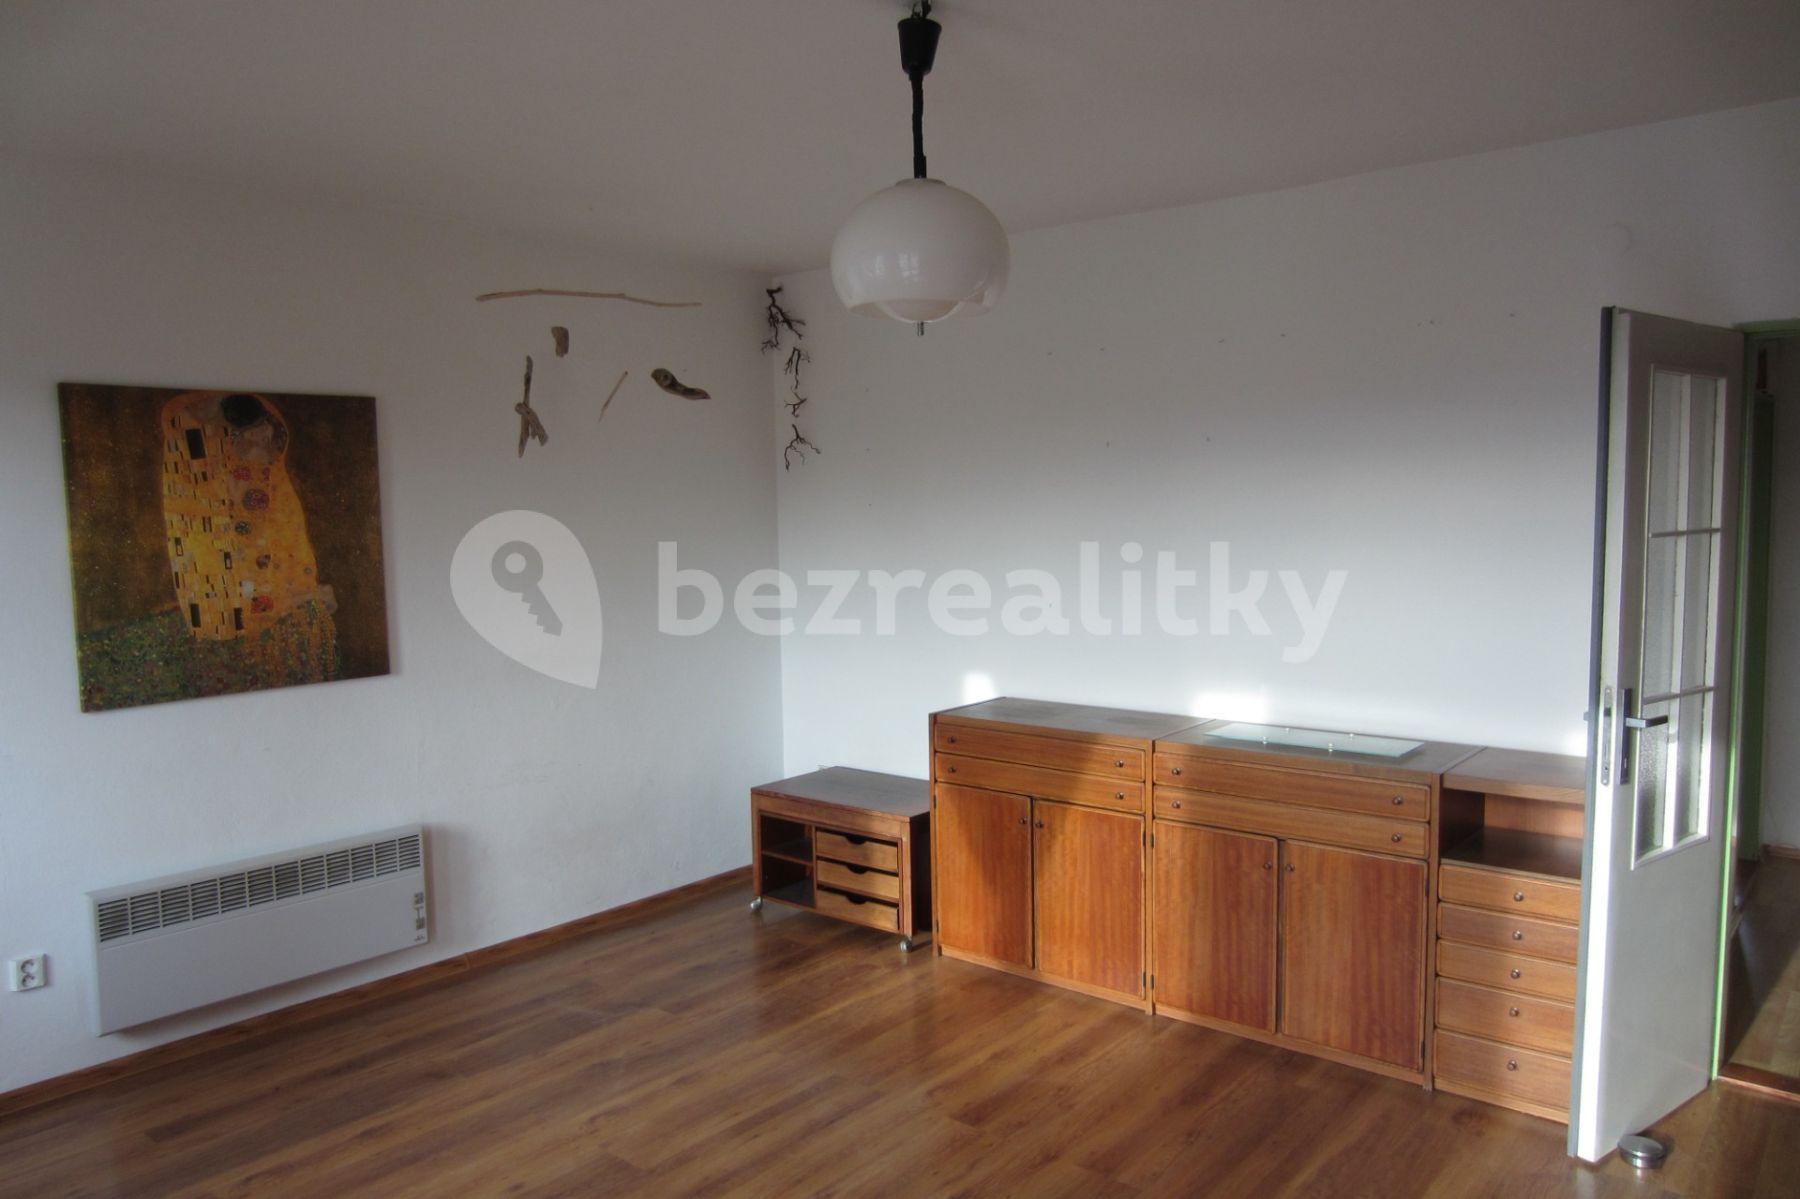 Prenájom bytu 3-izbový 75 m², 4773, Frýdek-Místek, Moravskoslezský kraj